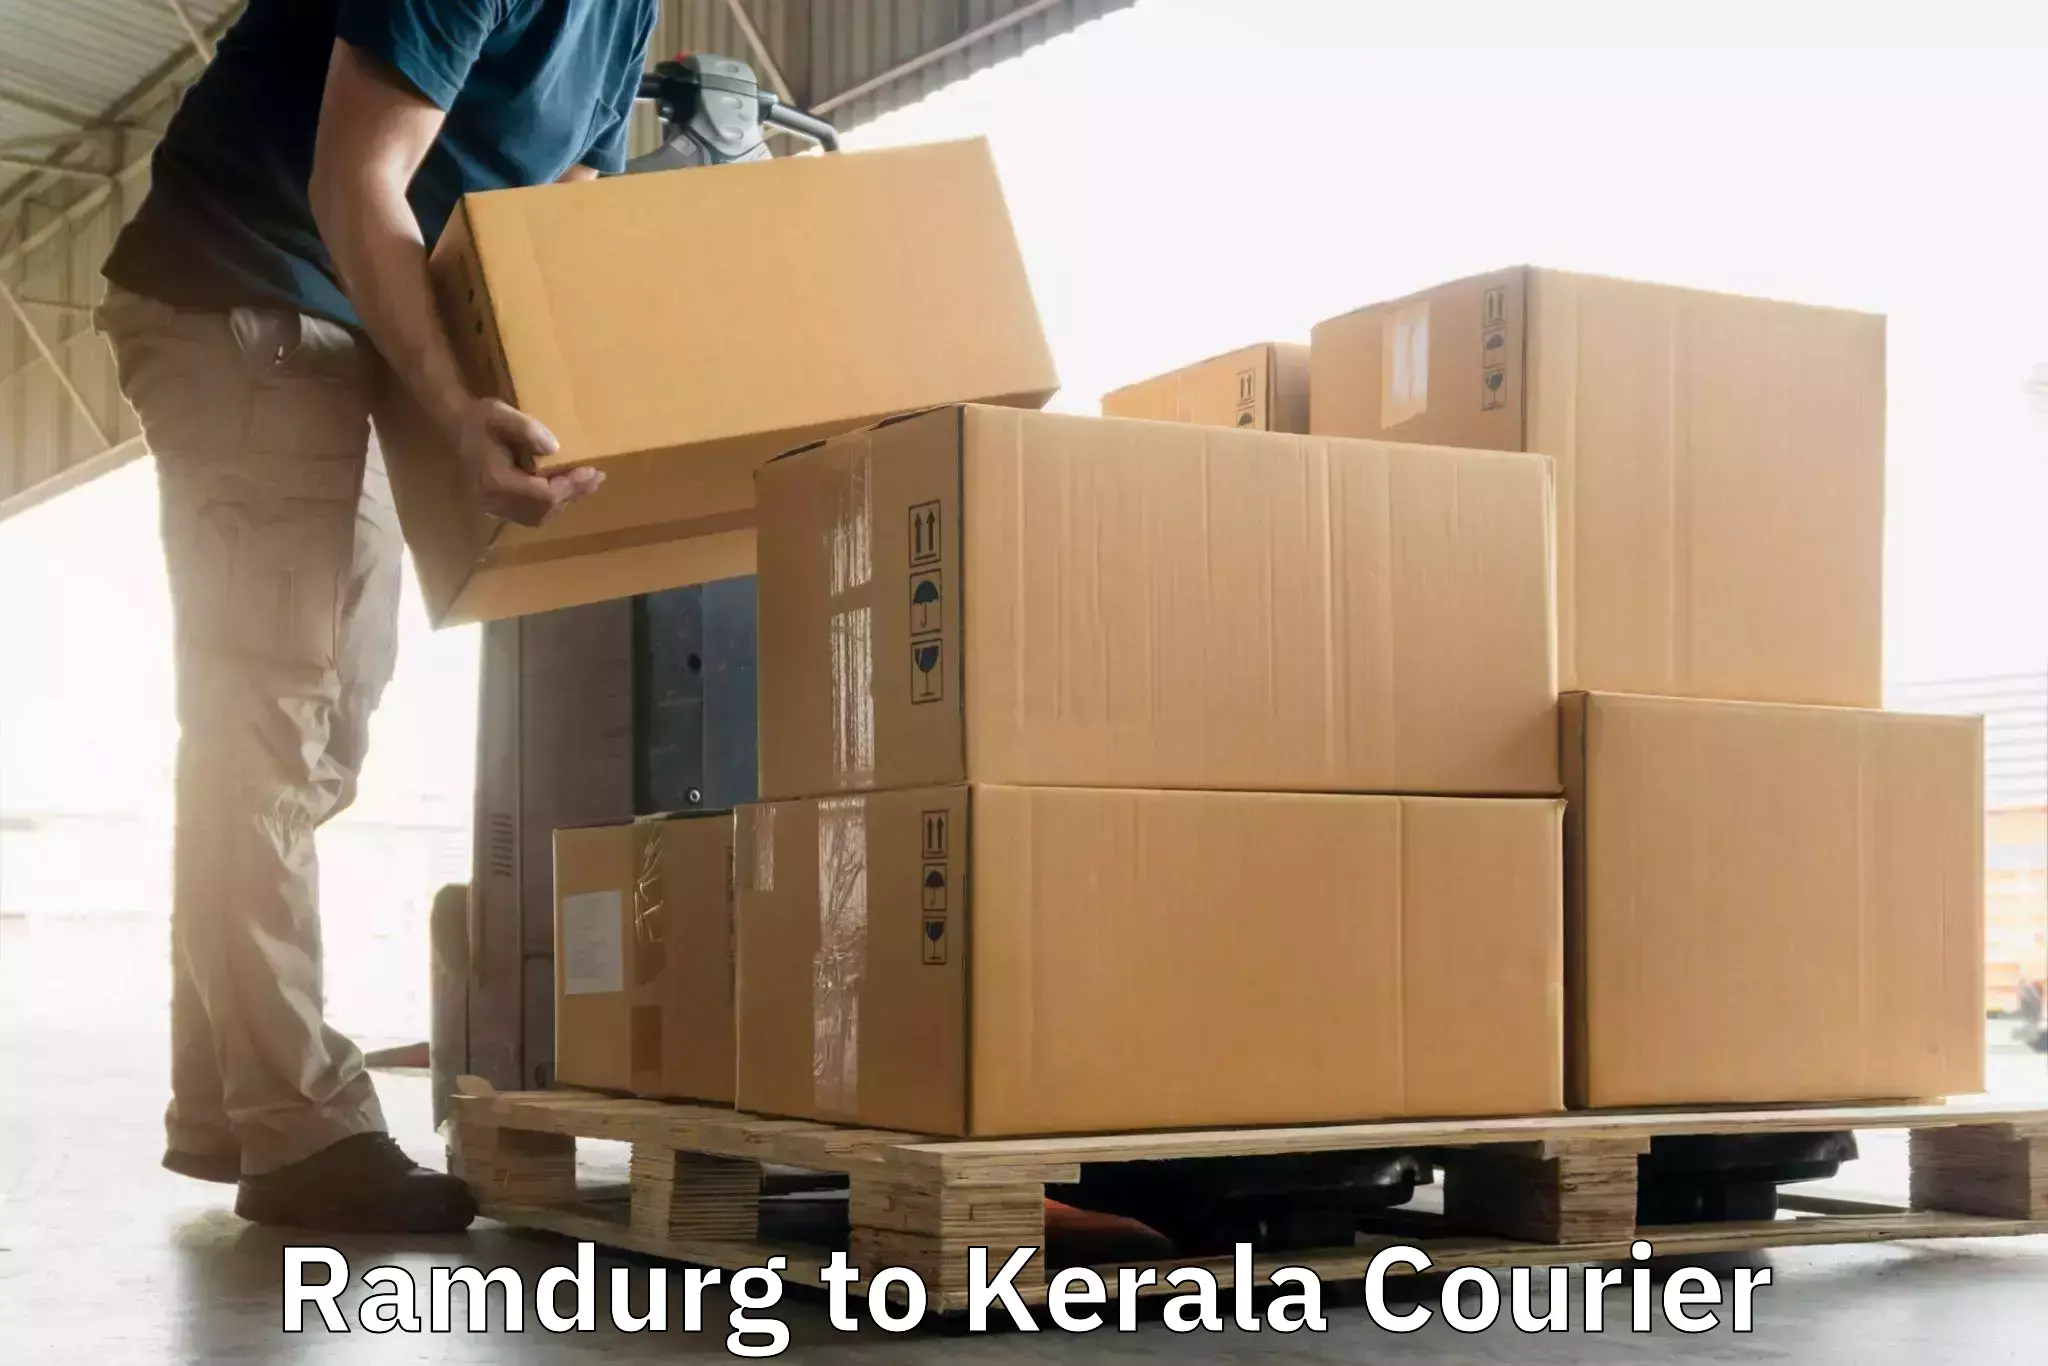 Nationwide courier service Ramdurg to Parippally